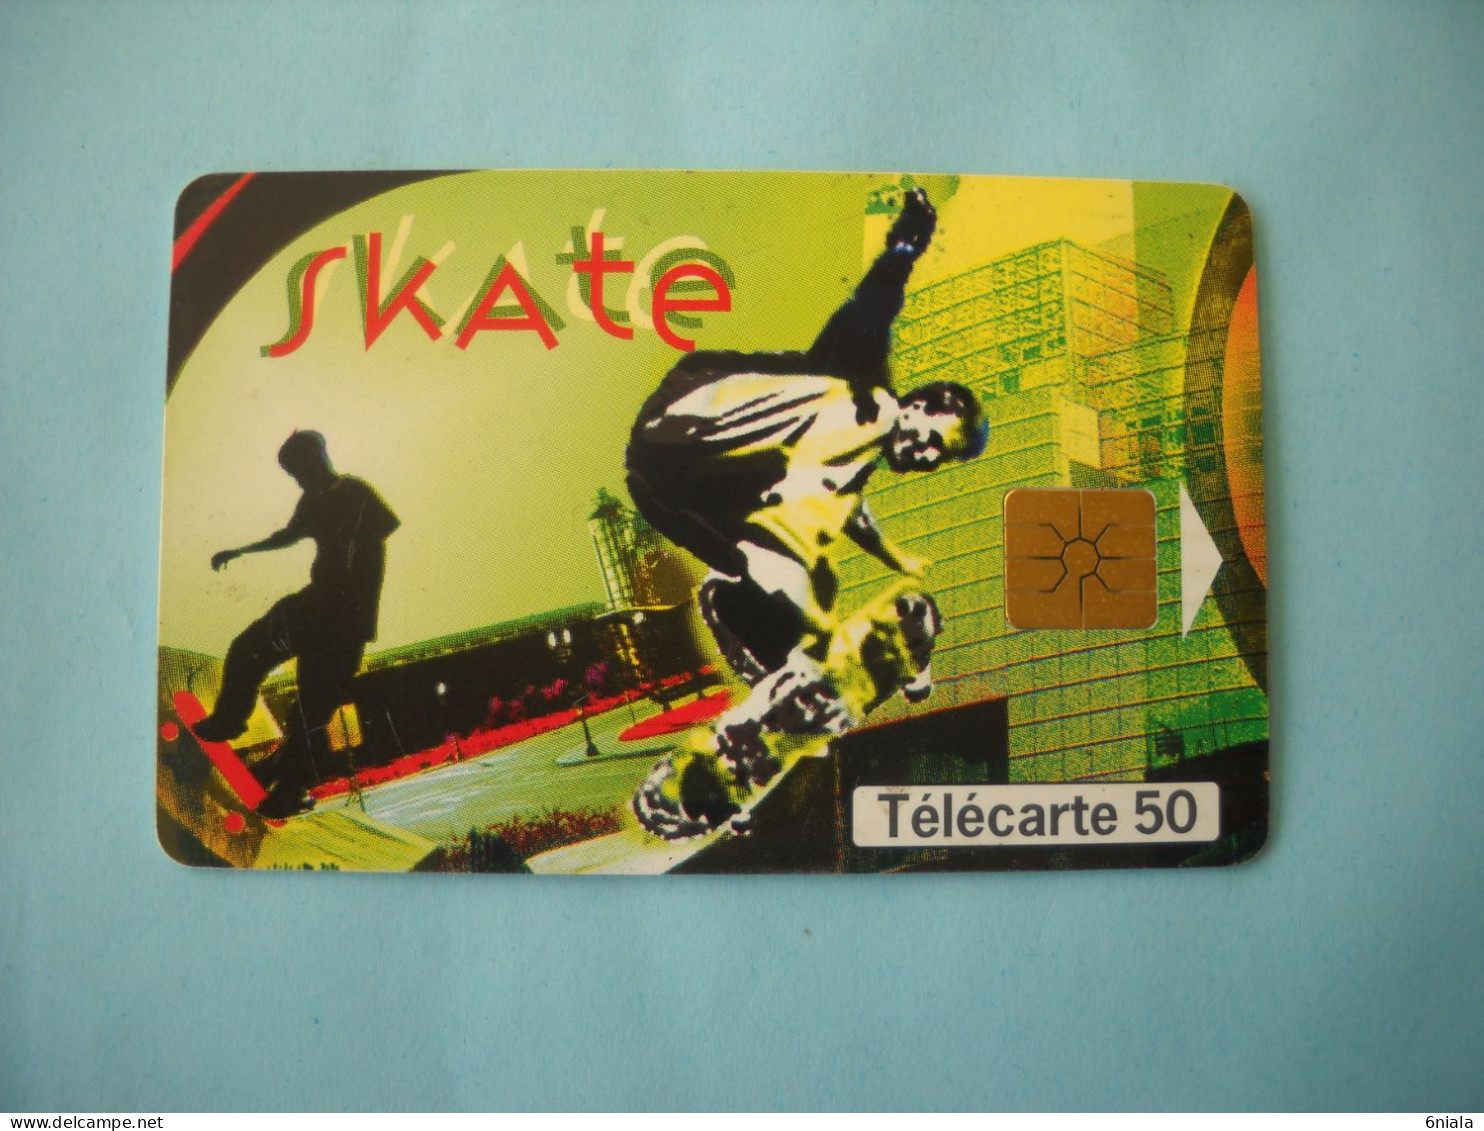 7603 Télécarte  Collection Street Culture  SKATE BOARD  N° 2 ( 2 Scans ) 50 U - Deportes